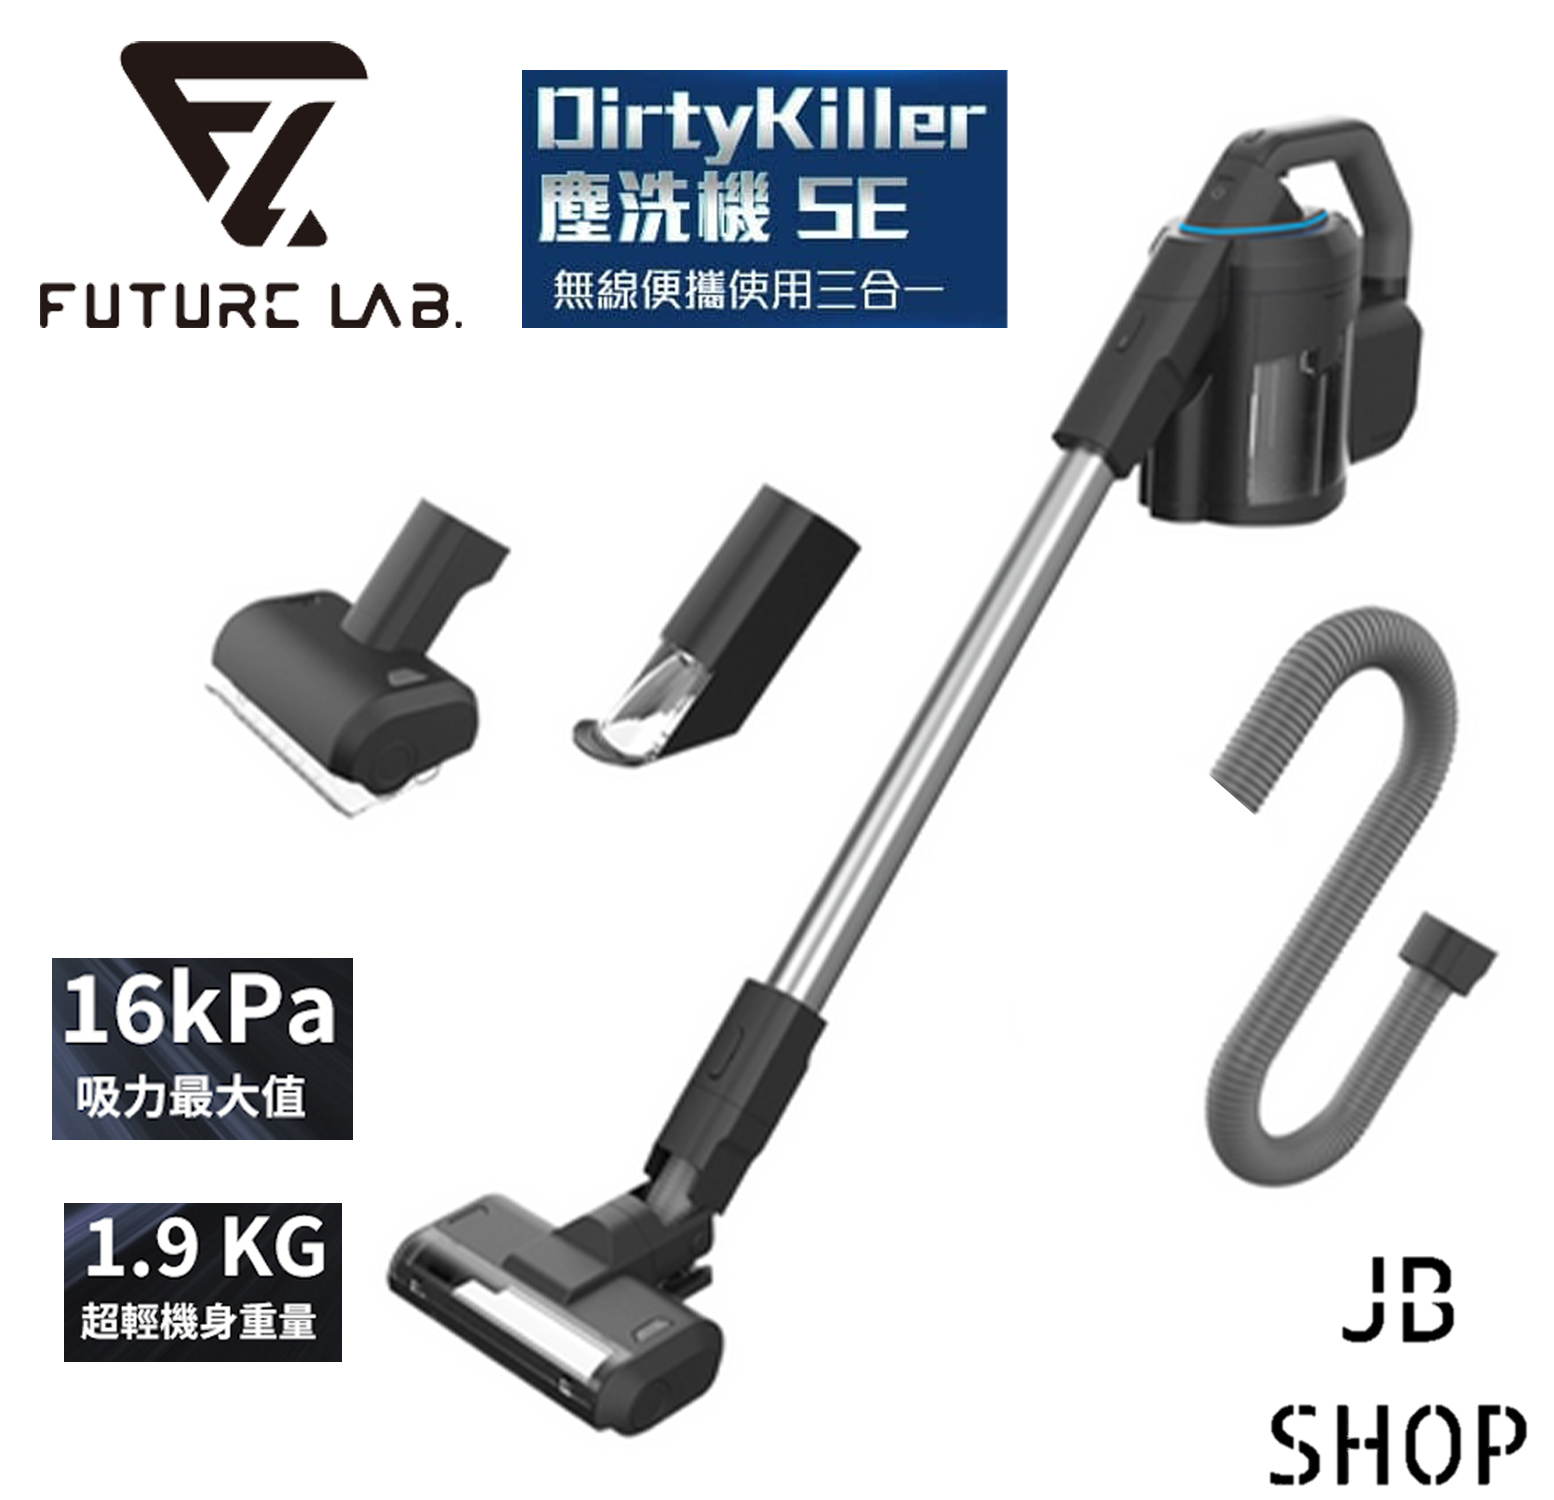 台灣Future Lab 三合一無線塵洗機Dirty Killer SE